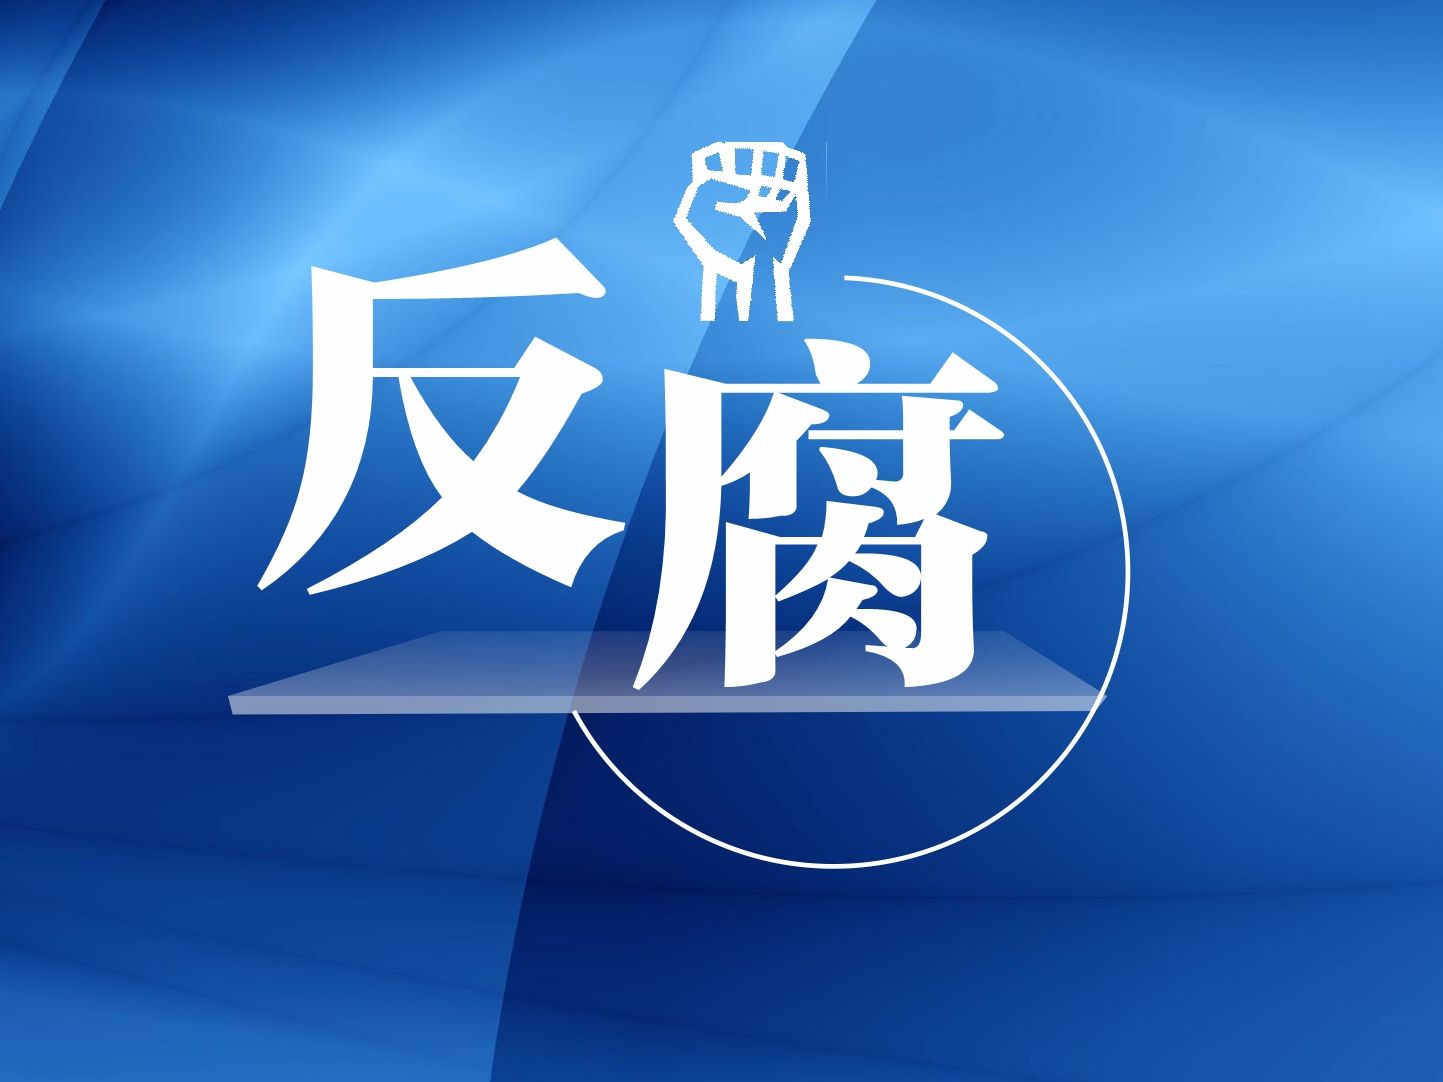 广东省人大常委会副主任、党组副书记李春生接受纪律审查和监察调查